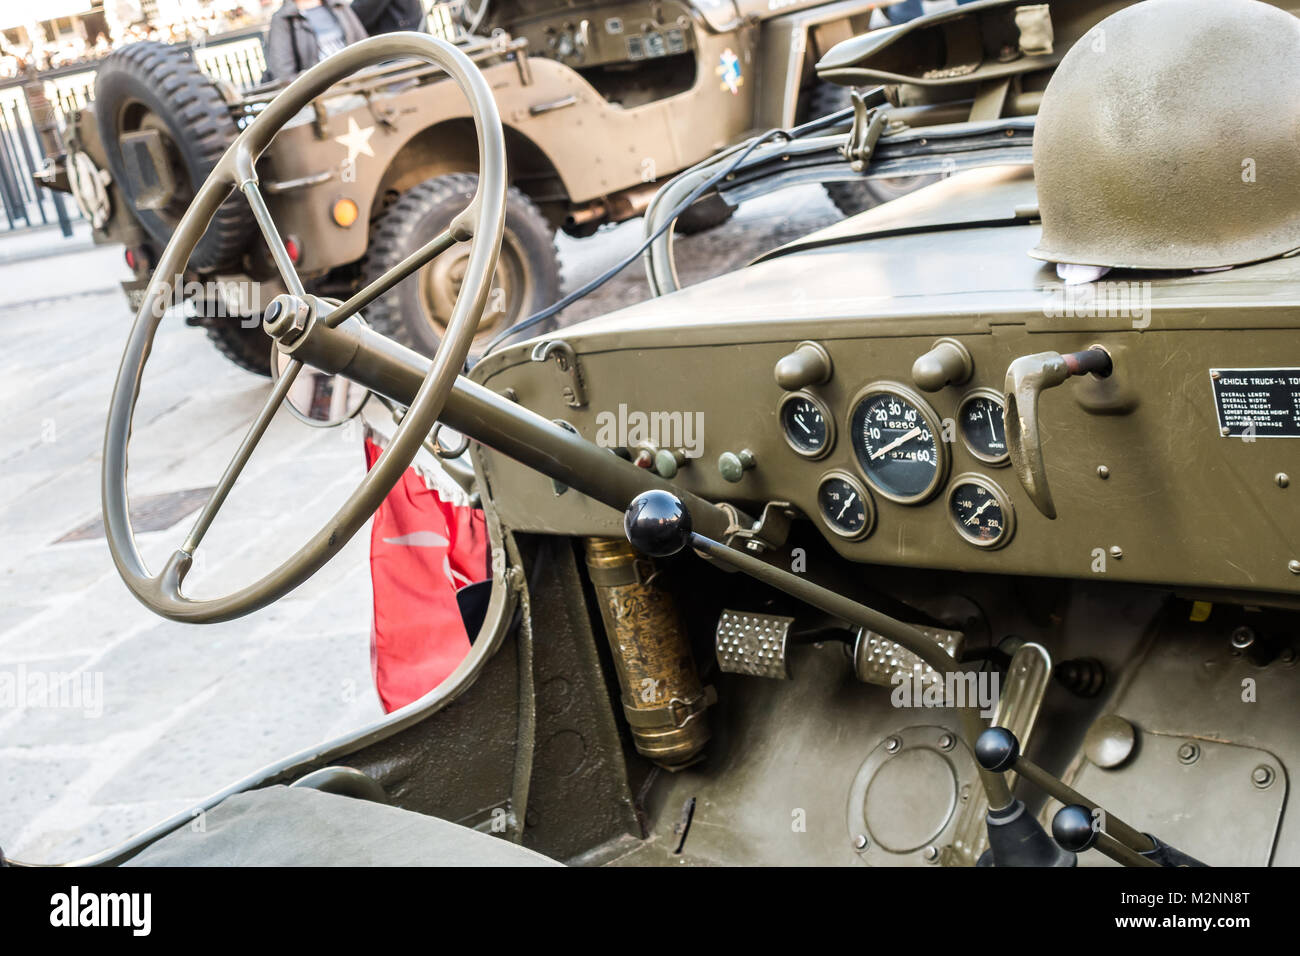 Trieste, Italia - 31 Marzo 2017: Esposizione di American auto d'epoca dalla guerra mondiale 2, Jeep Willys. Foto Stock